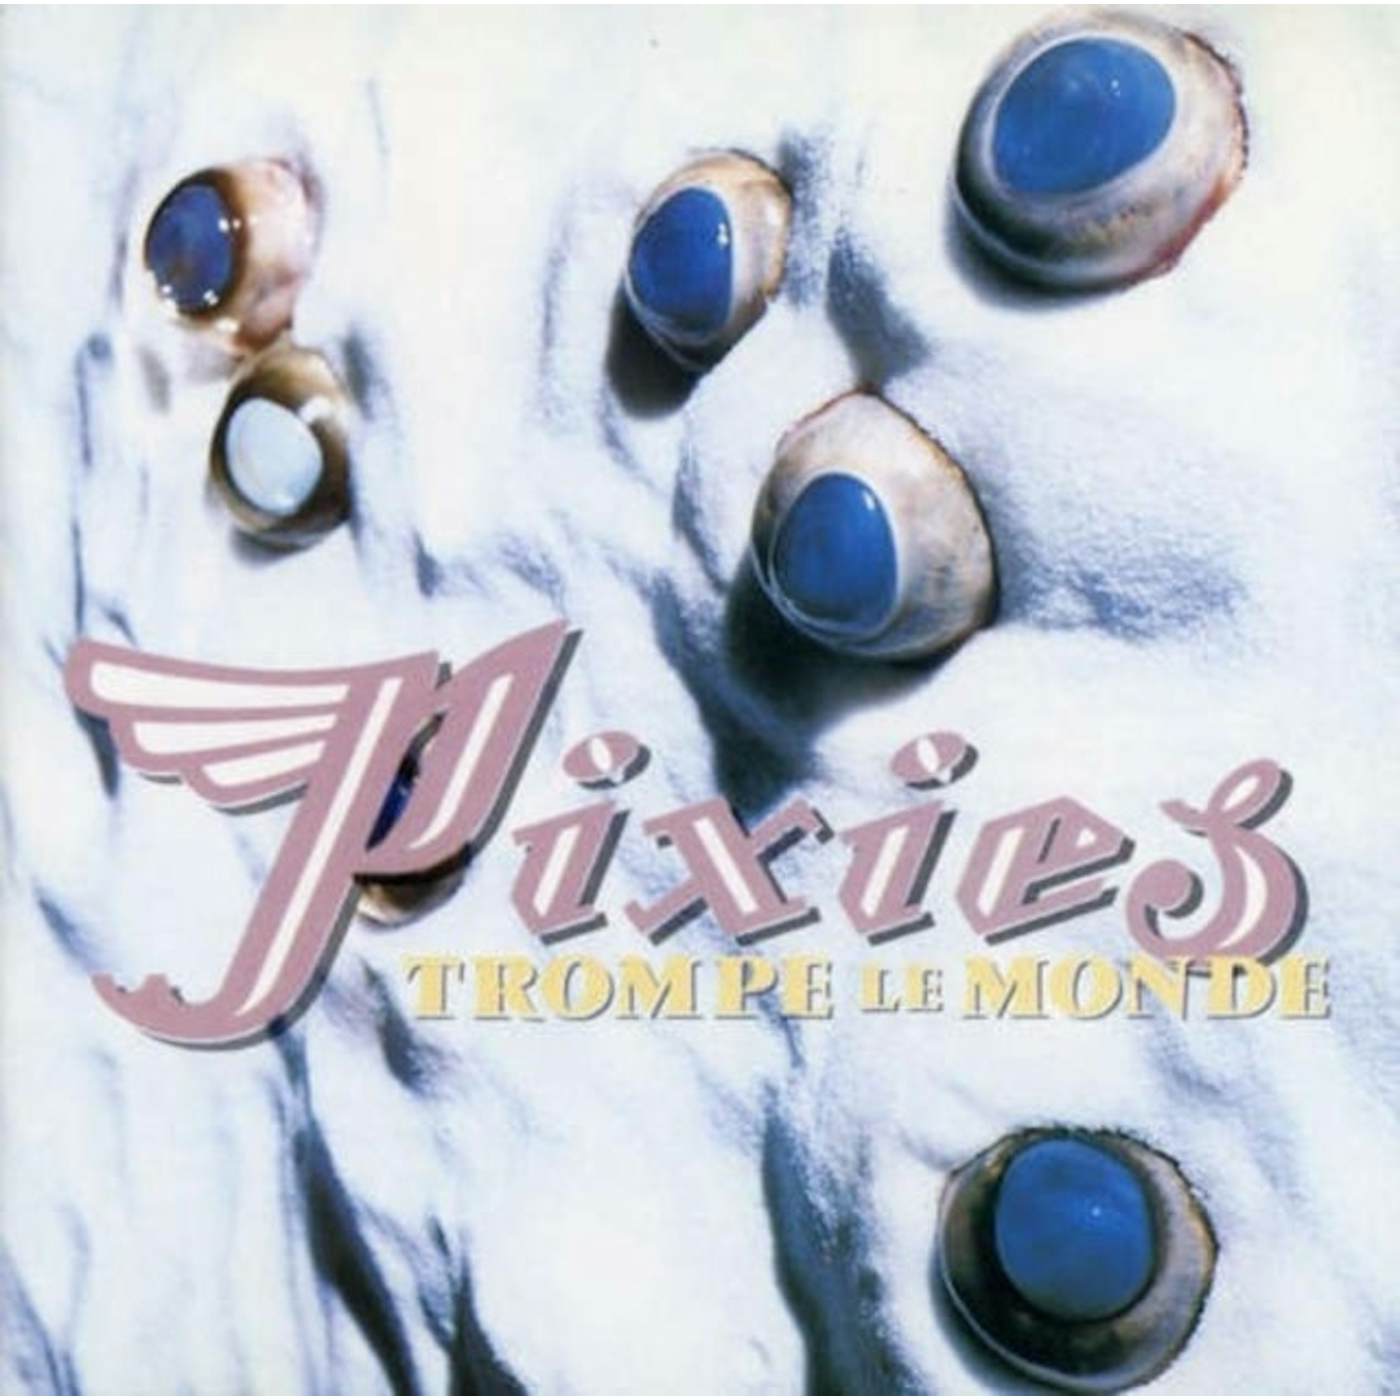 Pixies LP - Trompe Le Monde (Vinyl)